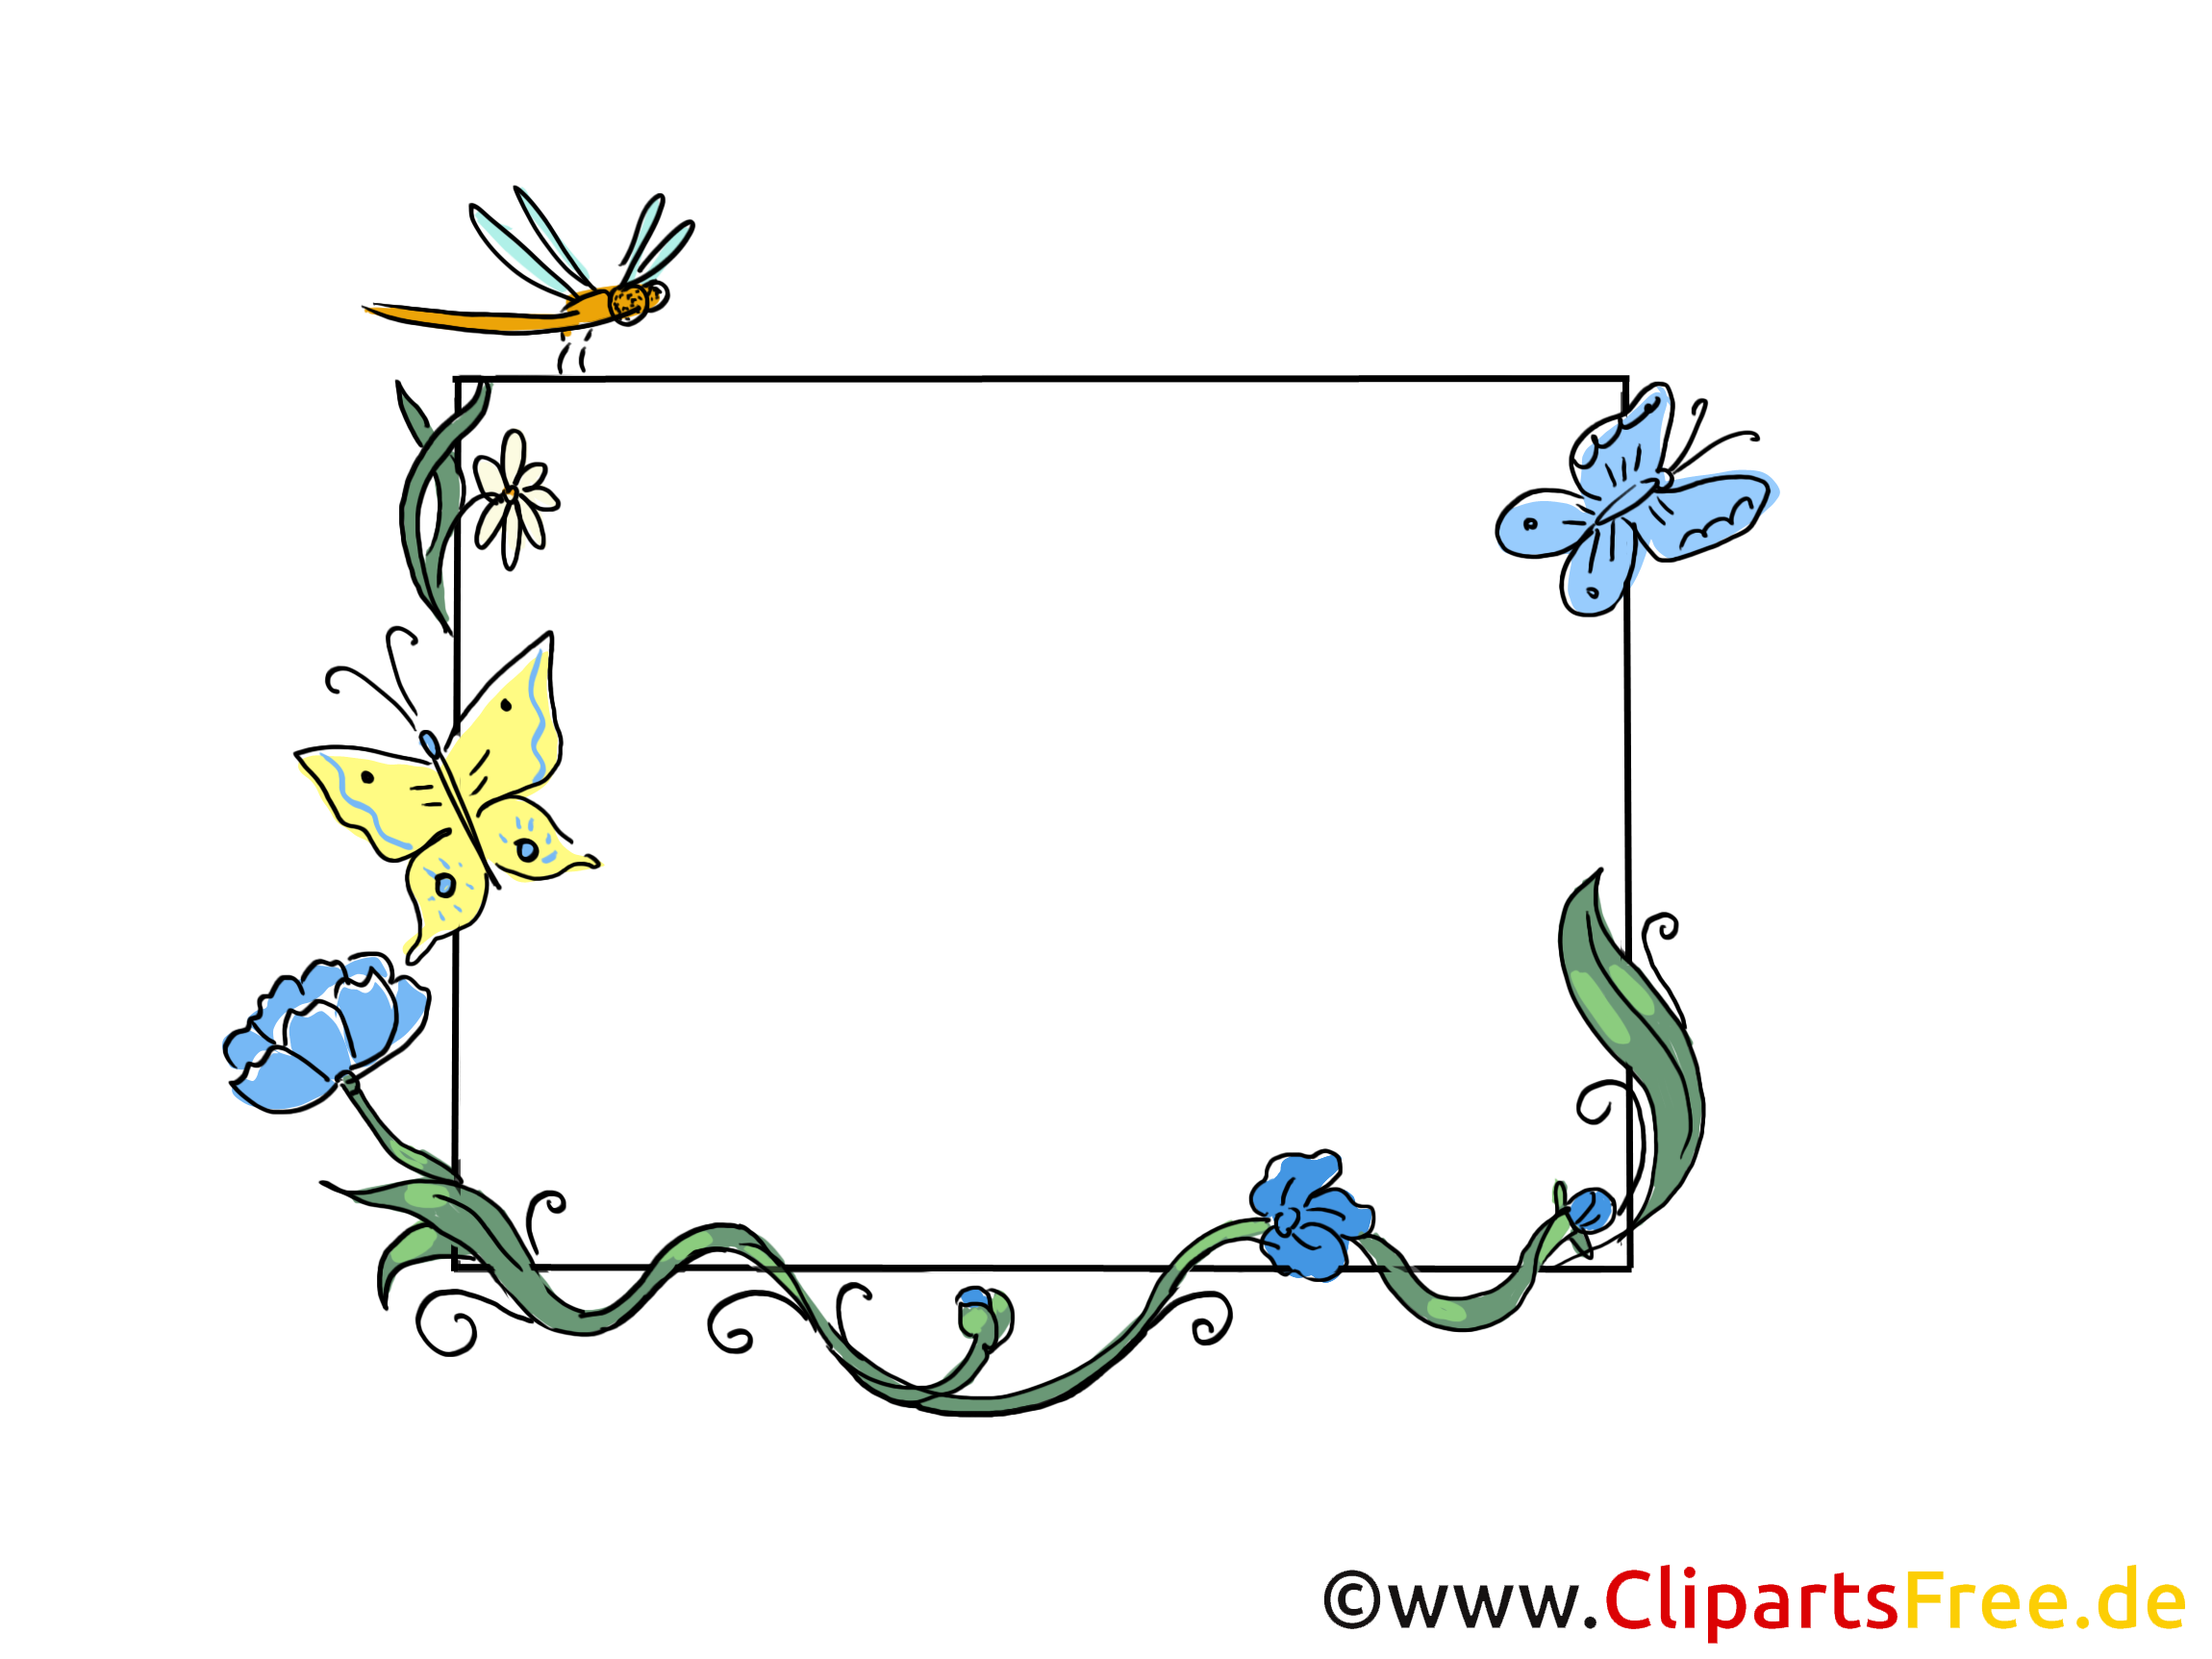 Insects images – Cadre clip art gratuit